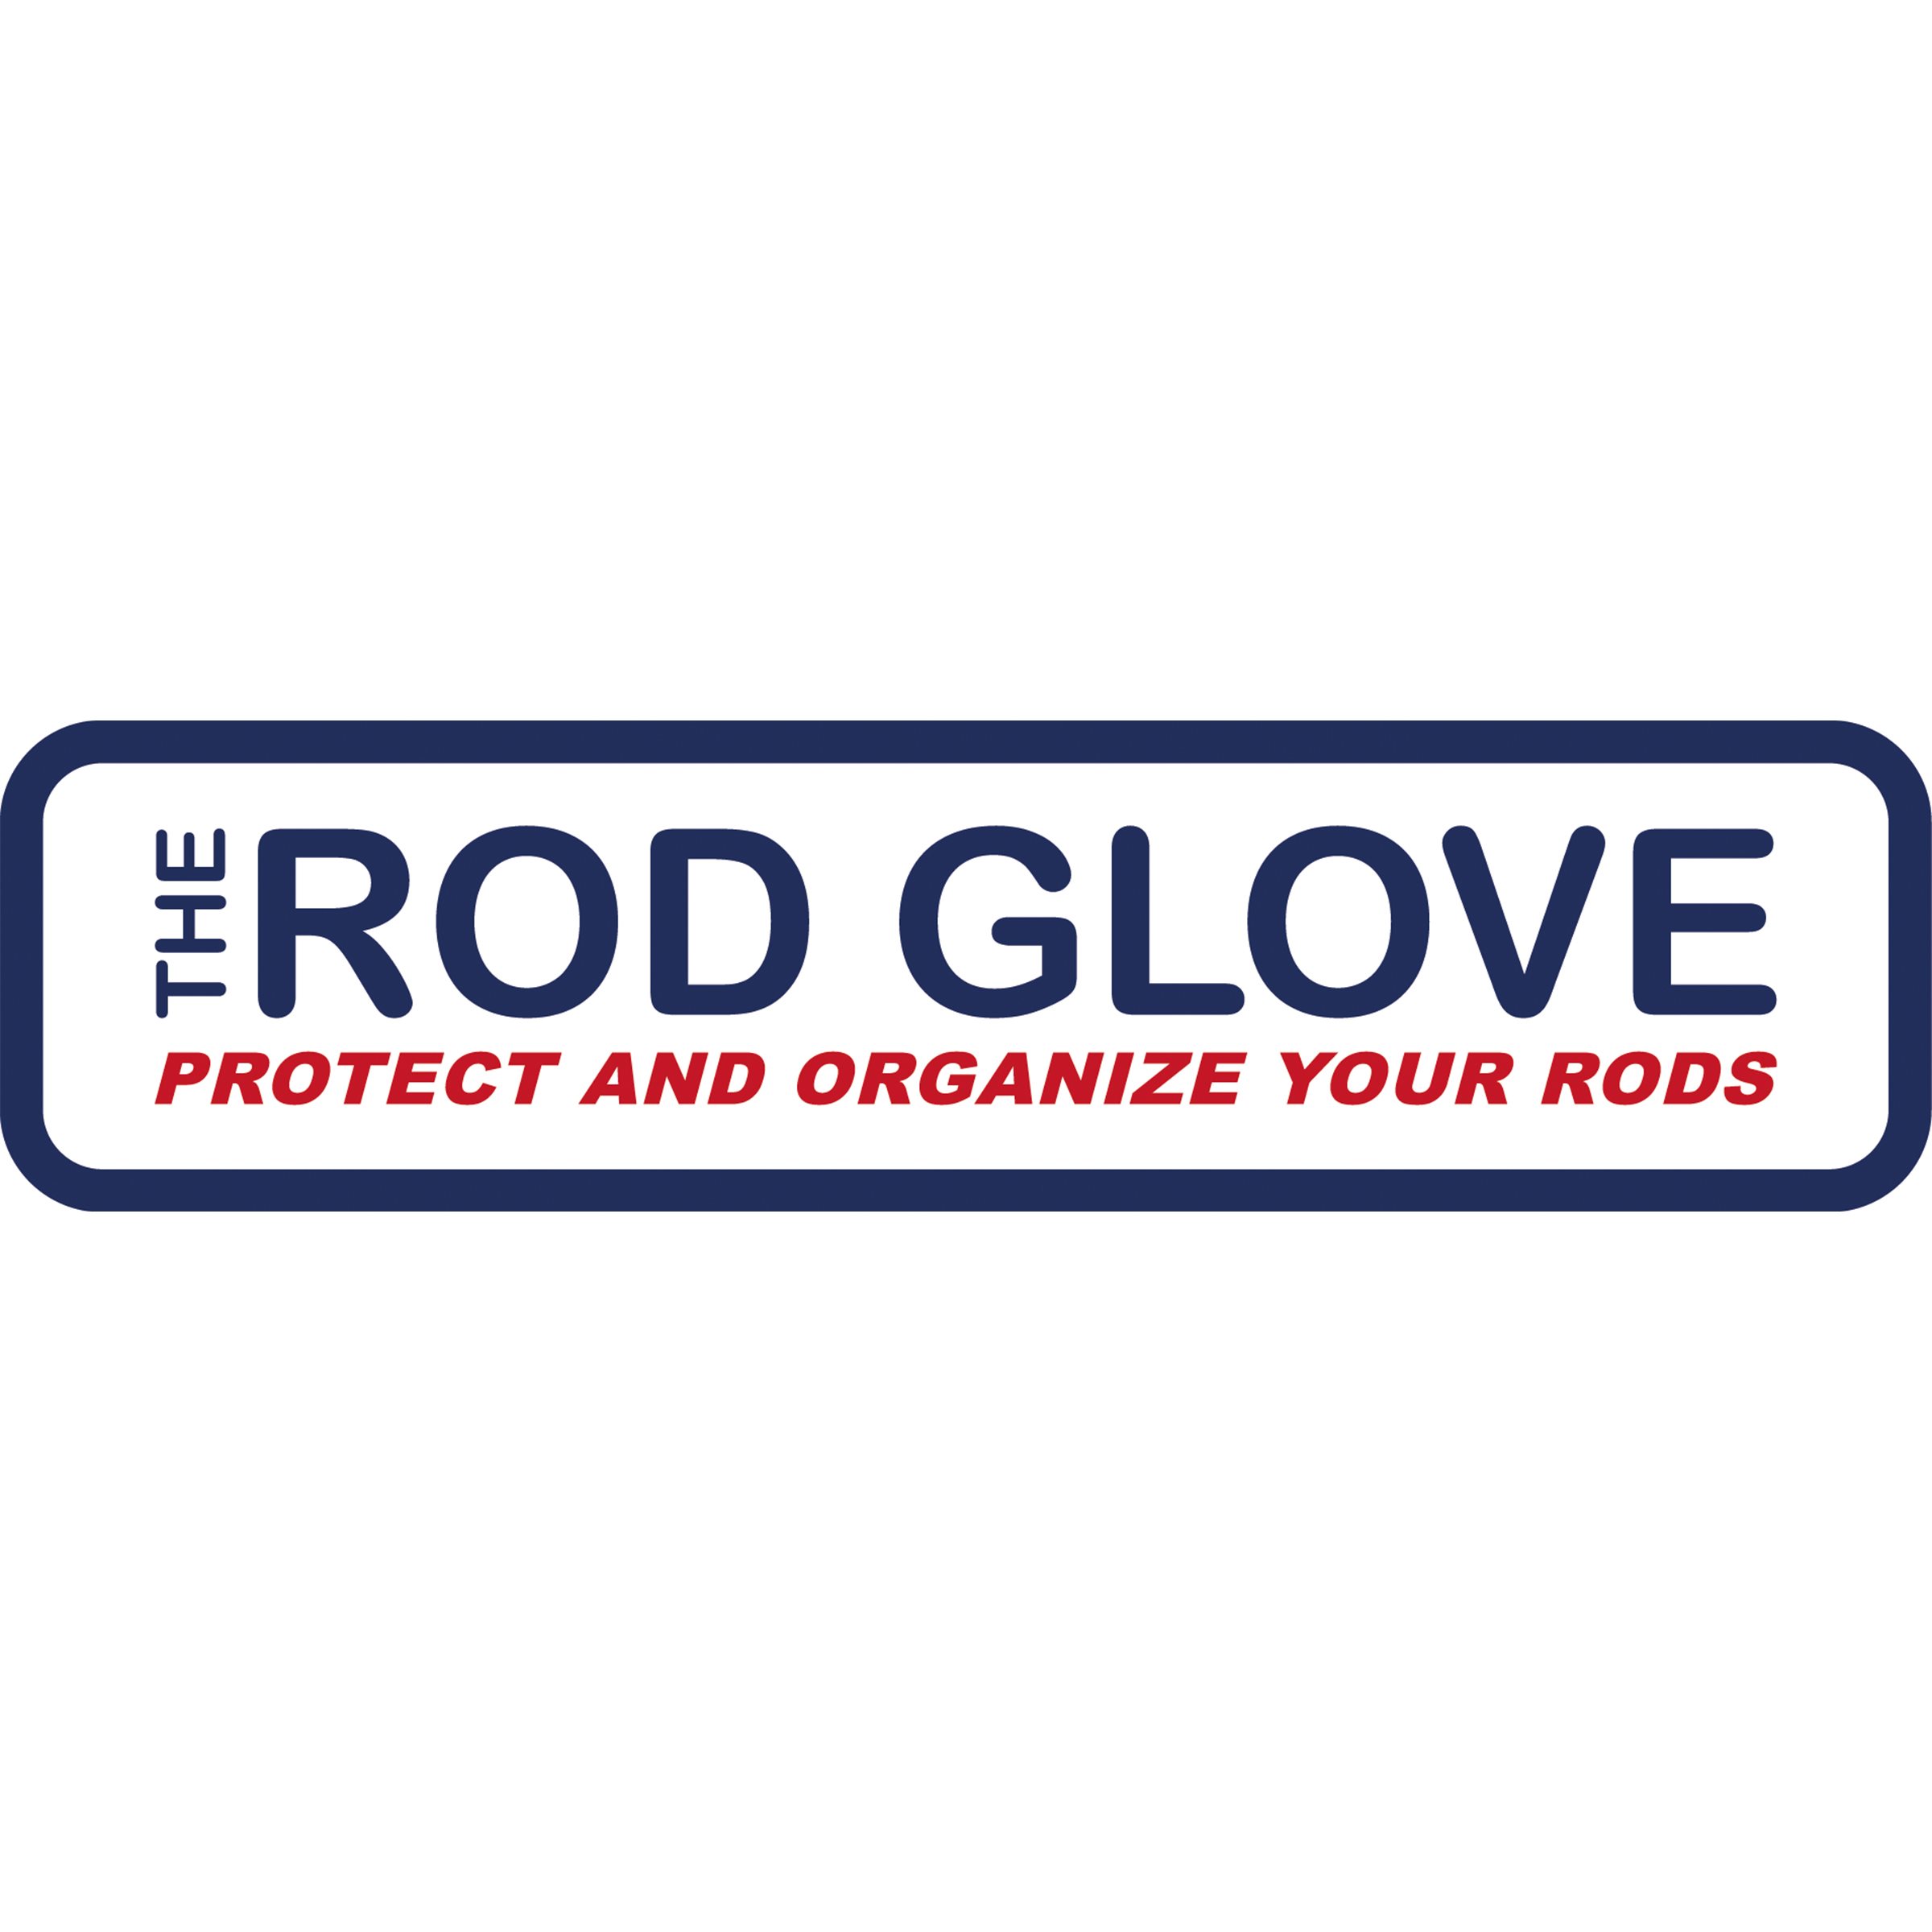 A_Rod-glove